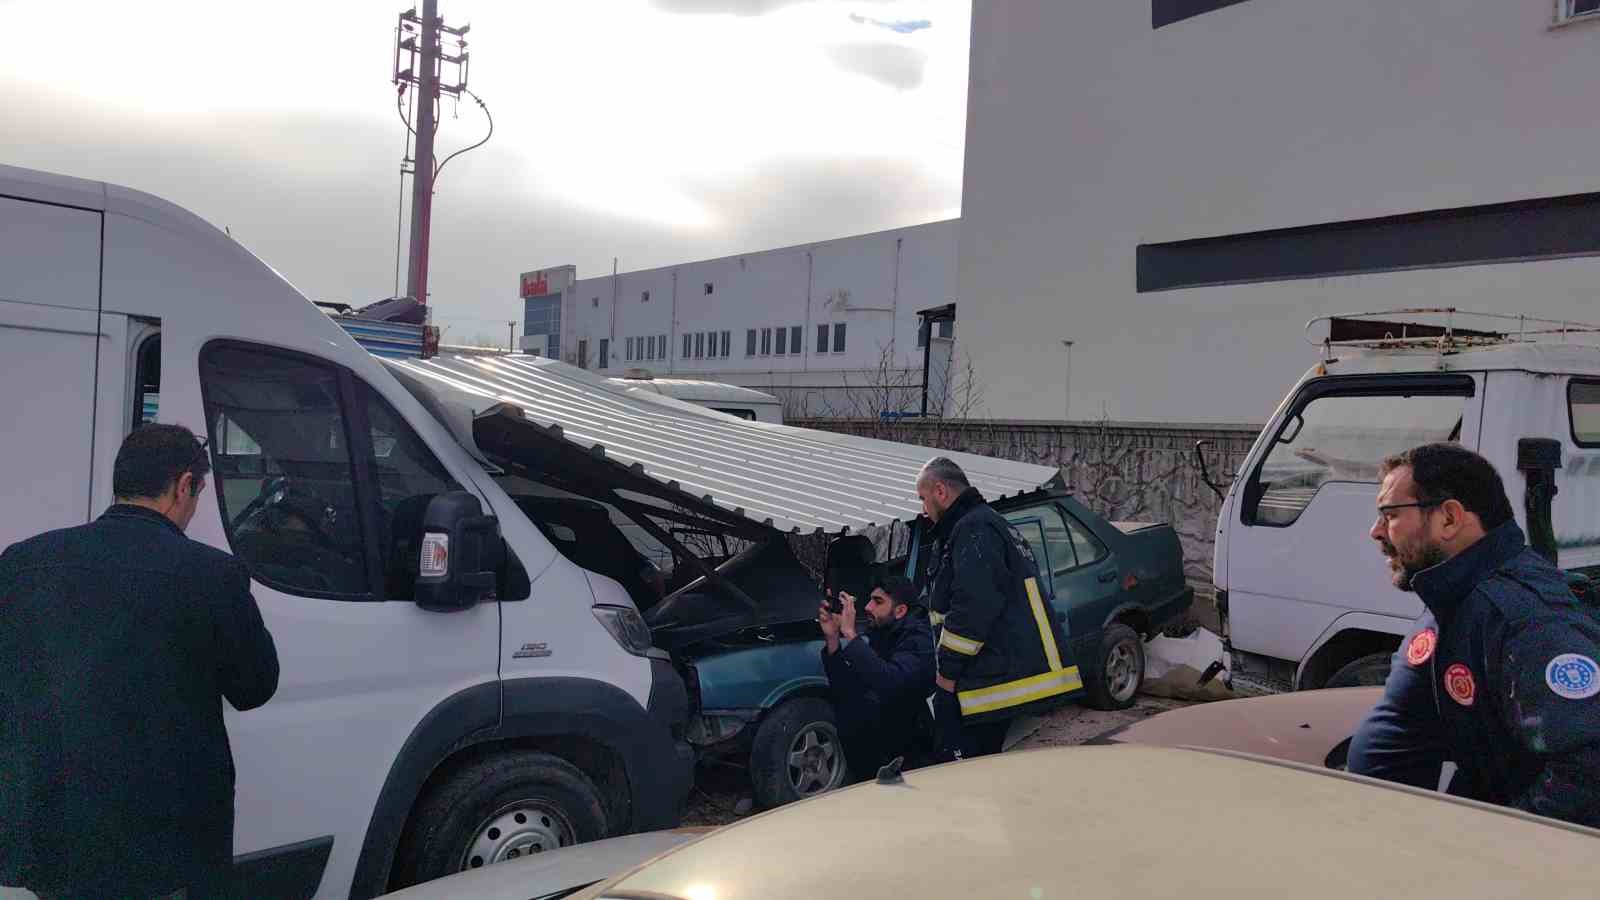 Lodosta uçan fabrika çatısı yediemin otoparkındaki araçlara zarar verdi